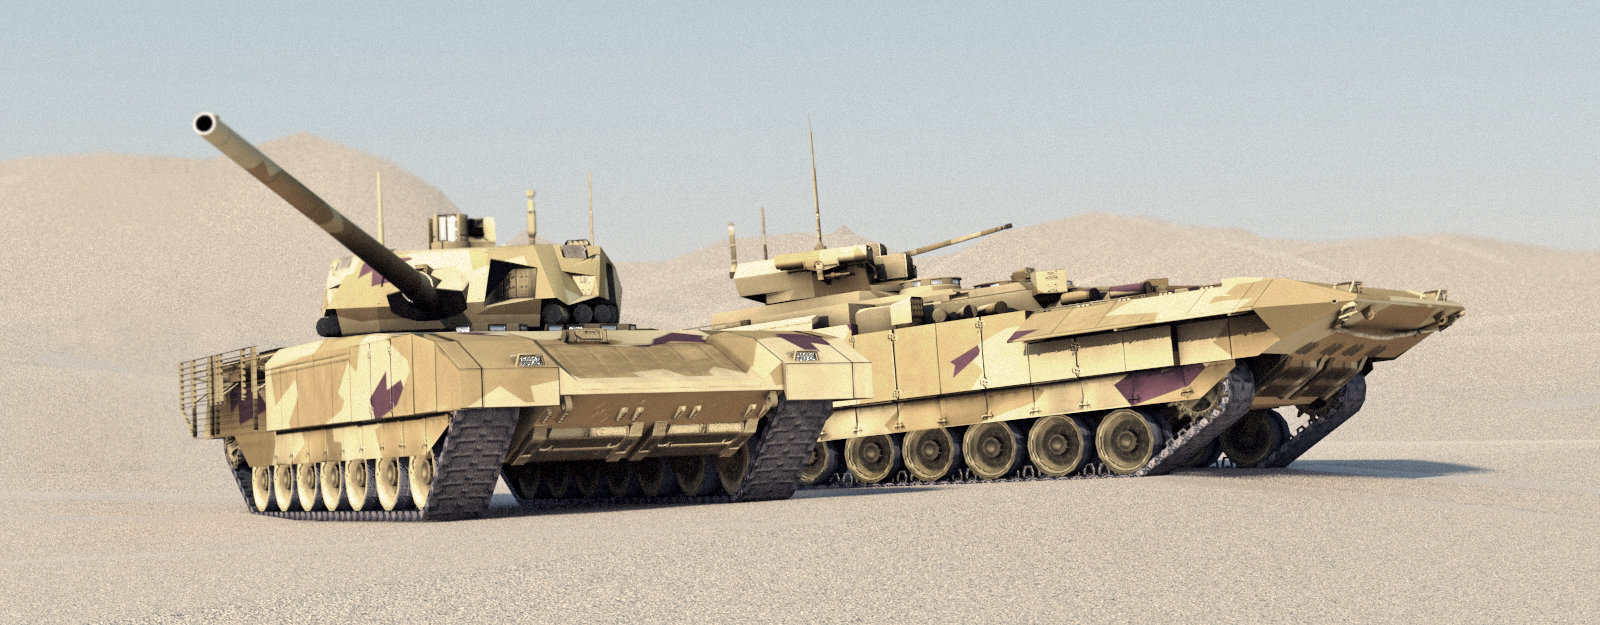 Dois batalhões de carro de combate T-14 Armata entraram em serviço em Fevereiro de 2018